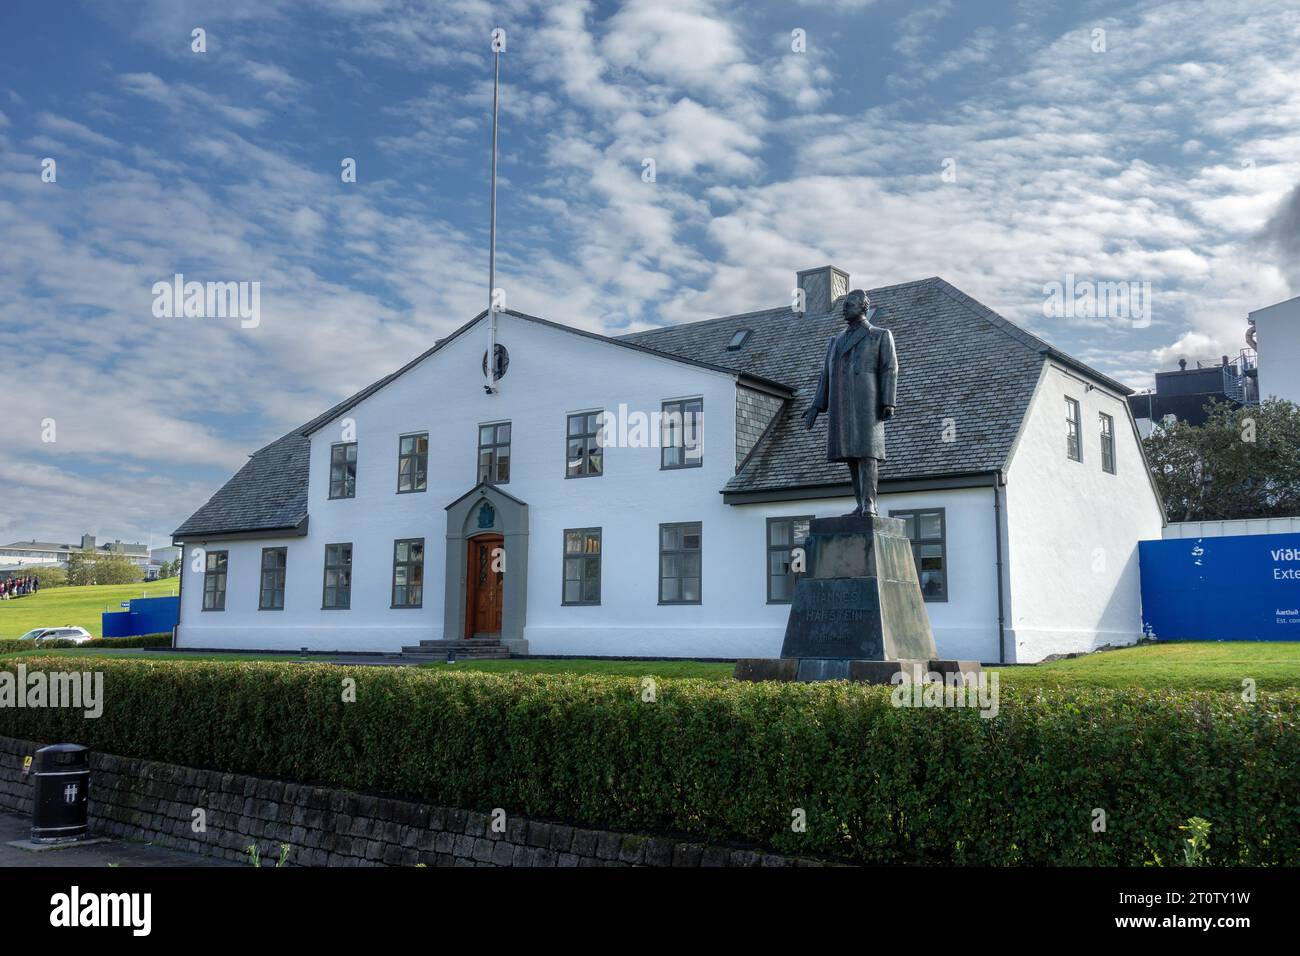 L'extérieur du bâtiment du bureau du Premier ministre iclandique, sur la rue Laekjargata Reykjavik Islande Banque D'Images